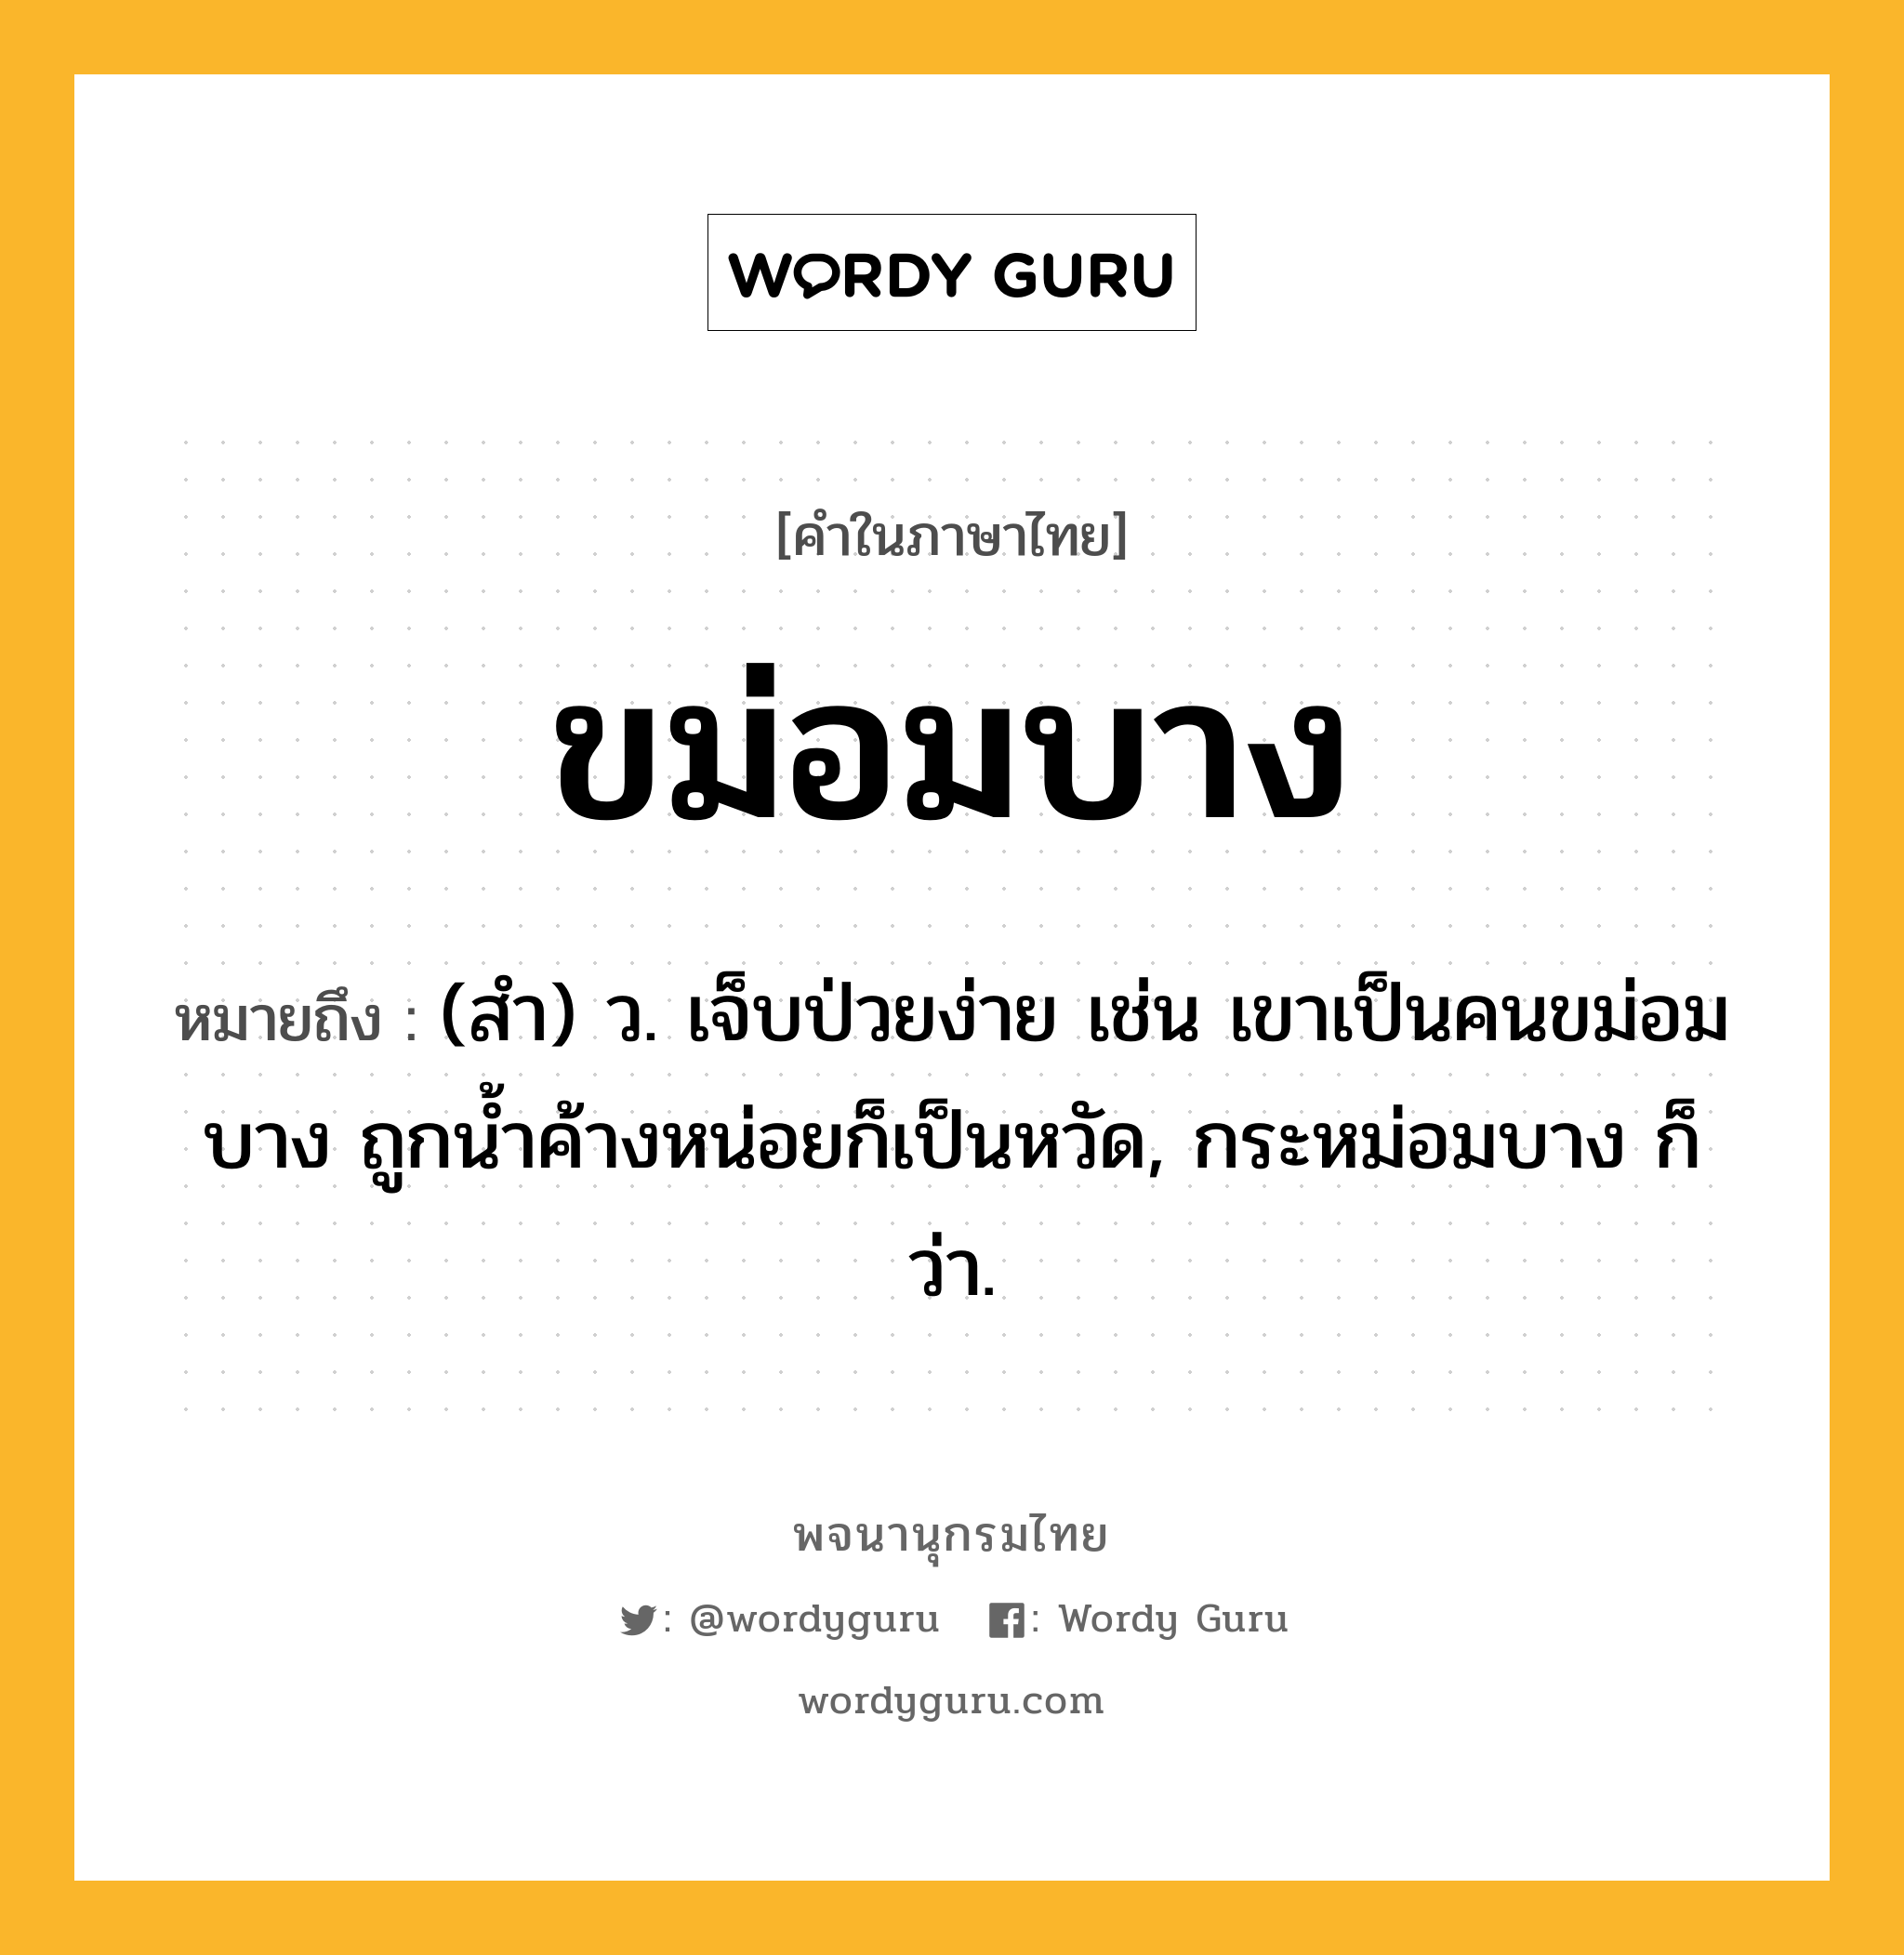 ขม่อมบาง ความหมาย หมายถึงอะไร?, คำในภาษาไทย ขม่อมบาง หมายถึง (สํา) ว. เจ็บป่วยง่าย เช่น เขาเป็นคนขม่อมบาง ถูกนํ้าค้างหน่อยก็เป็นหวัด, กระหม่อมบาง ก็ว่า.